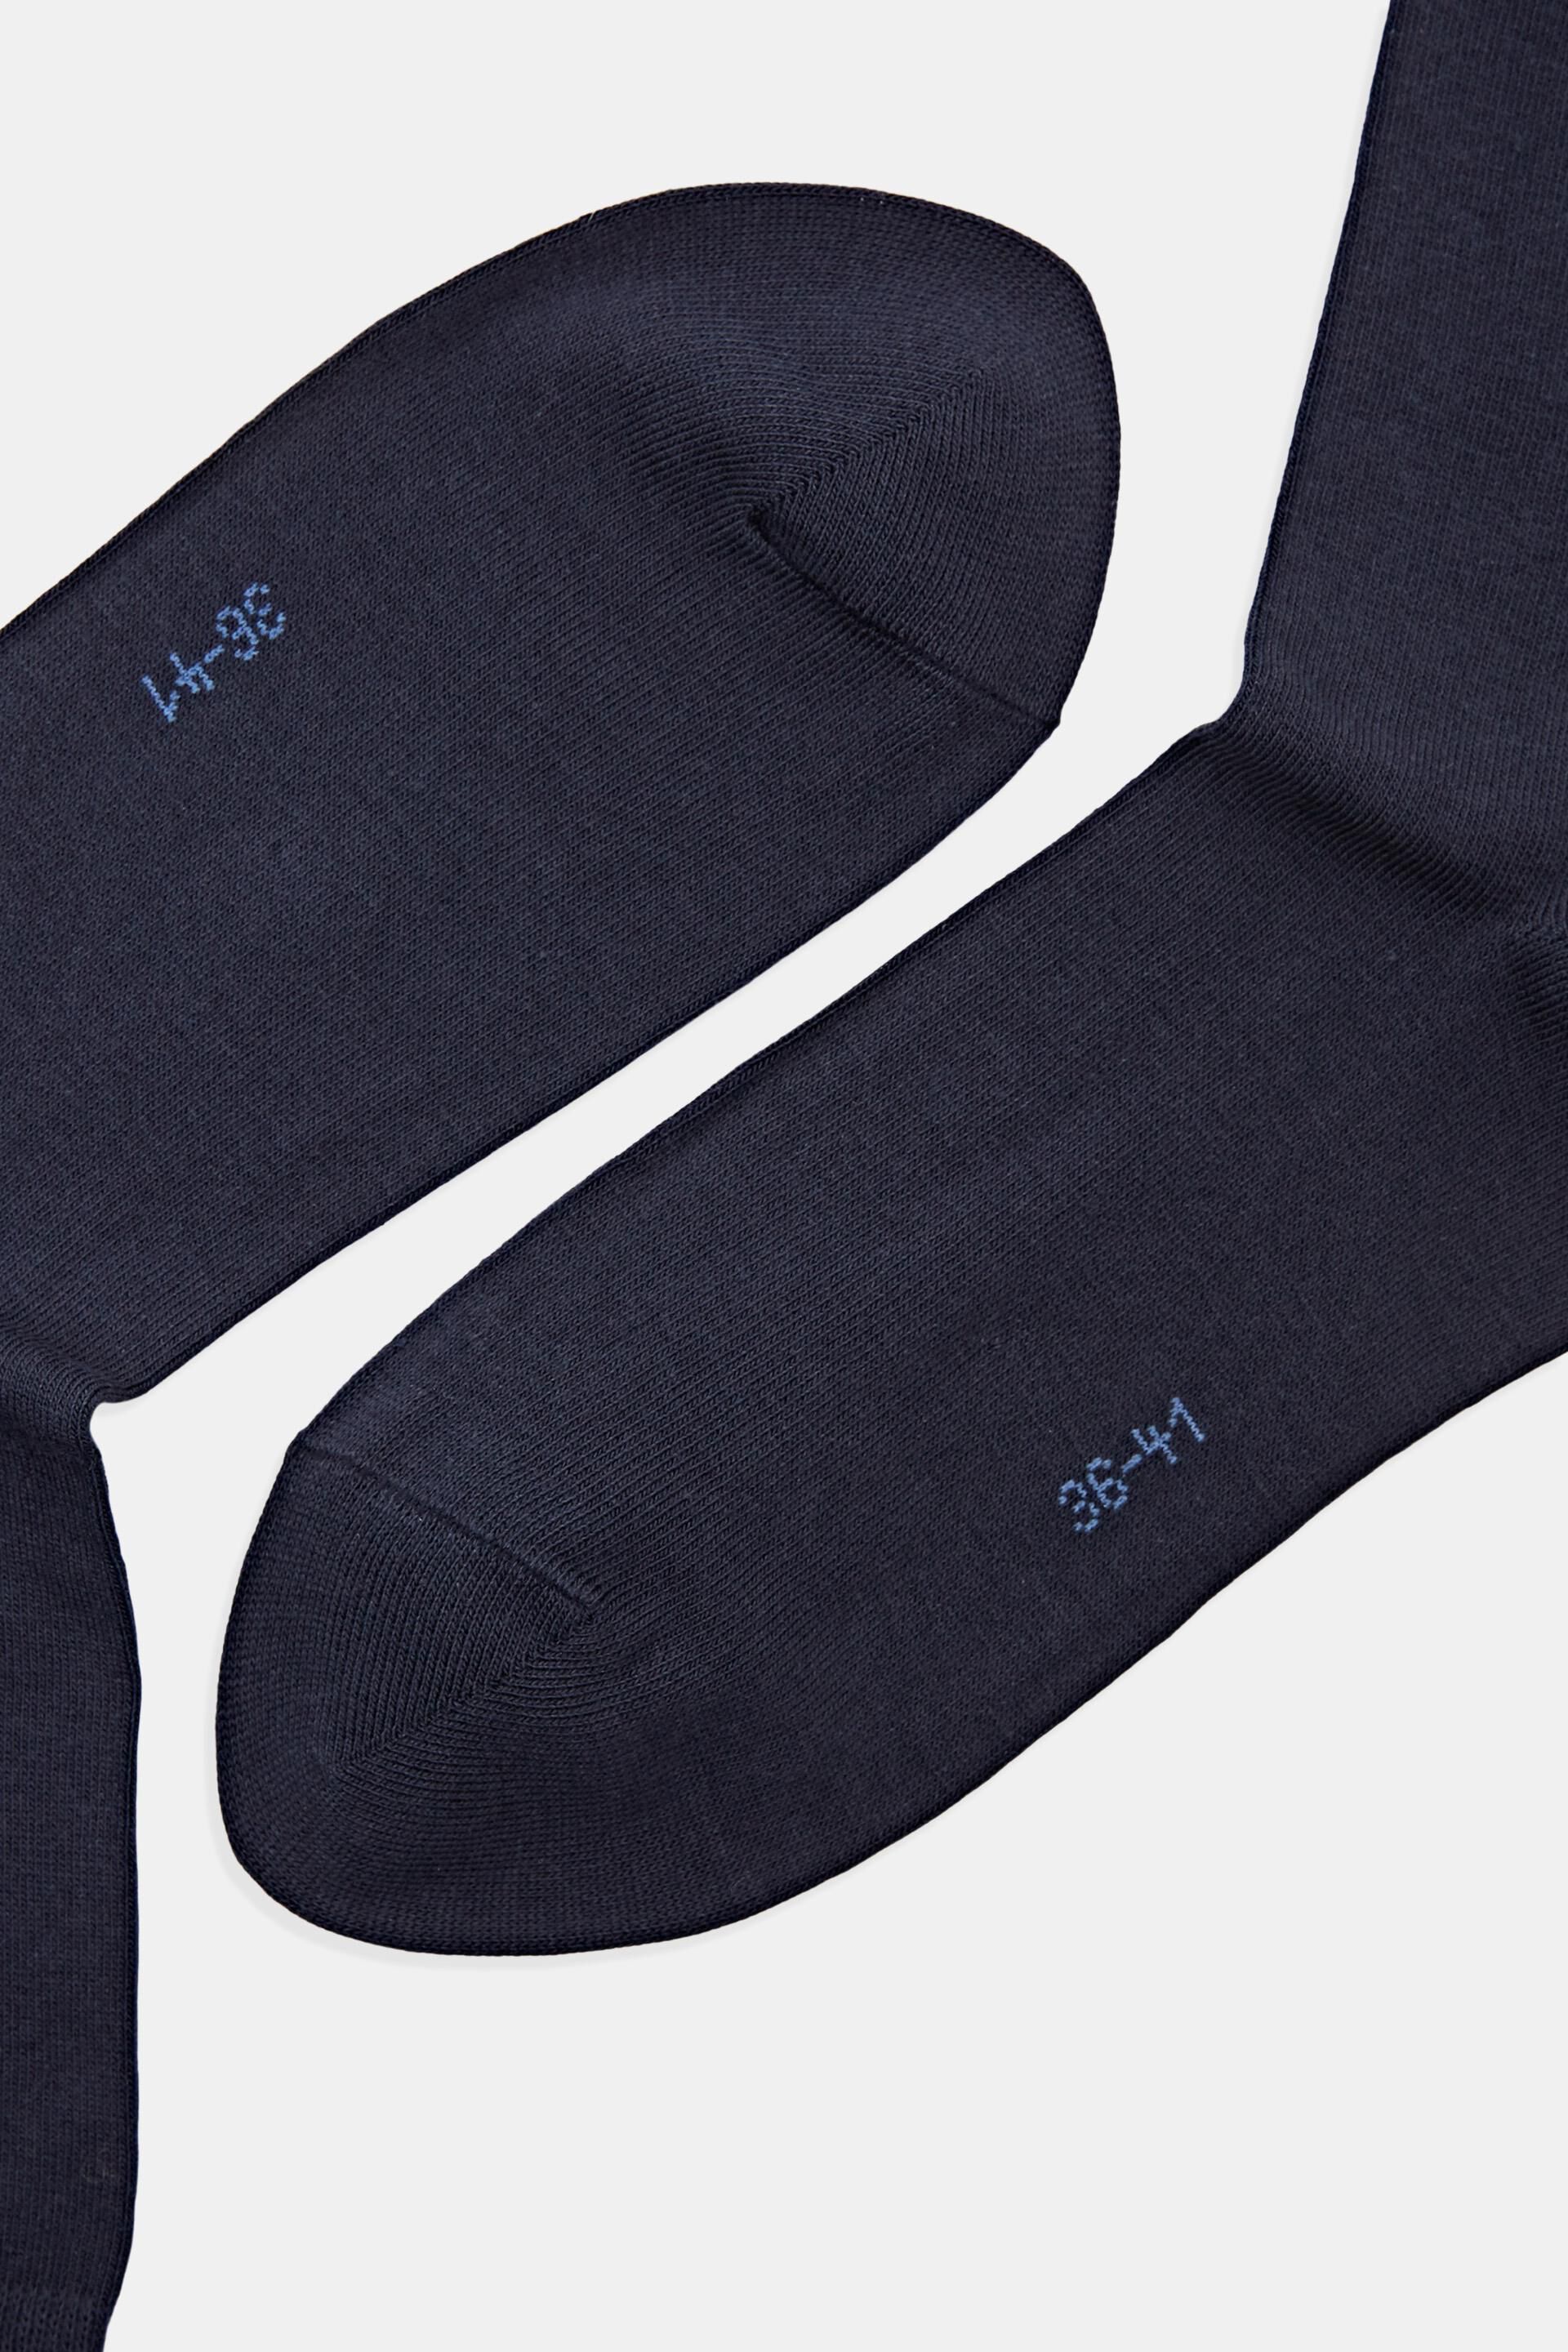 Esprit Online Store 5er-Pack einfarbige Socken aus Bio-Baumwolle